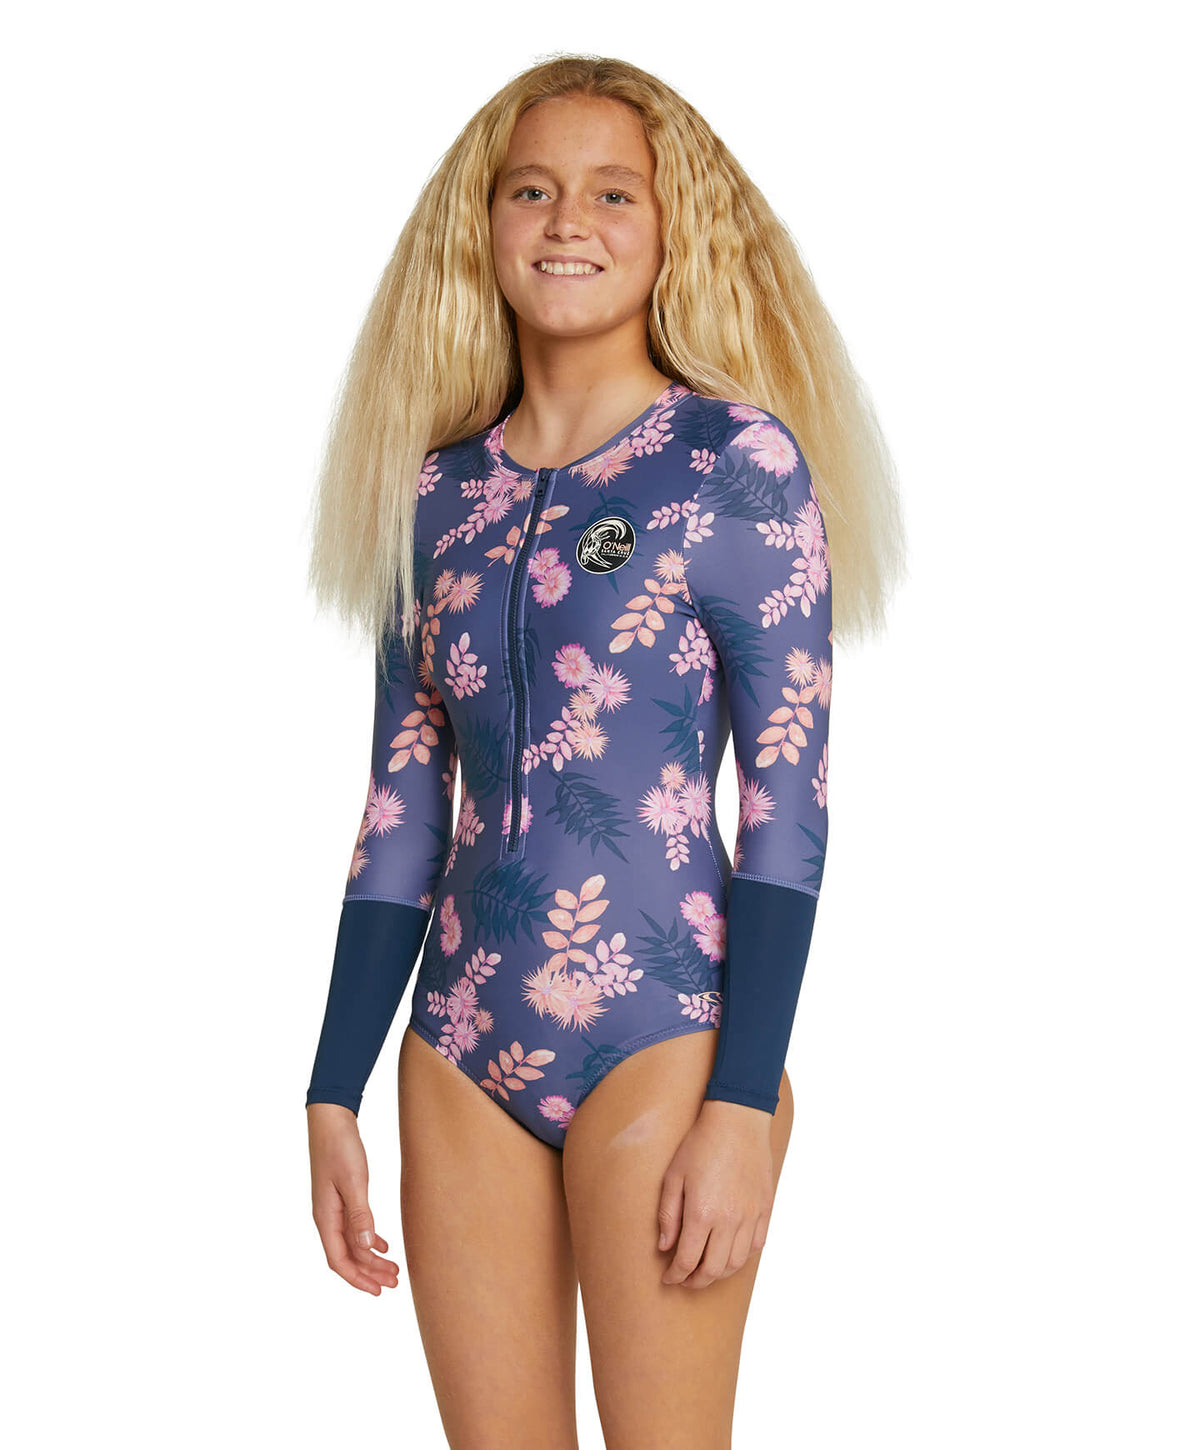 Girls Long Sleeve Surfsuit Rash Vest - Magenta Floral